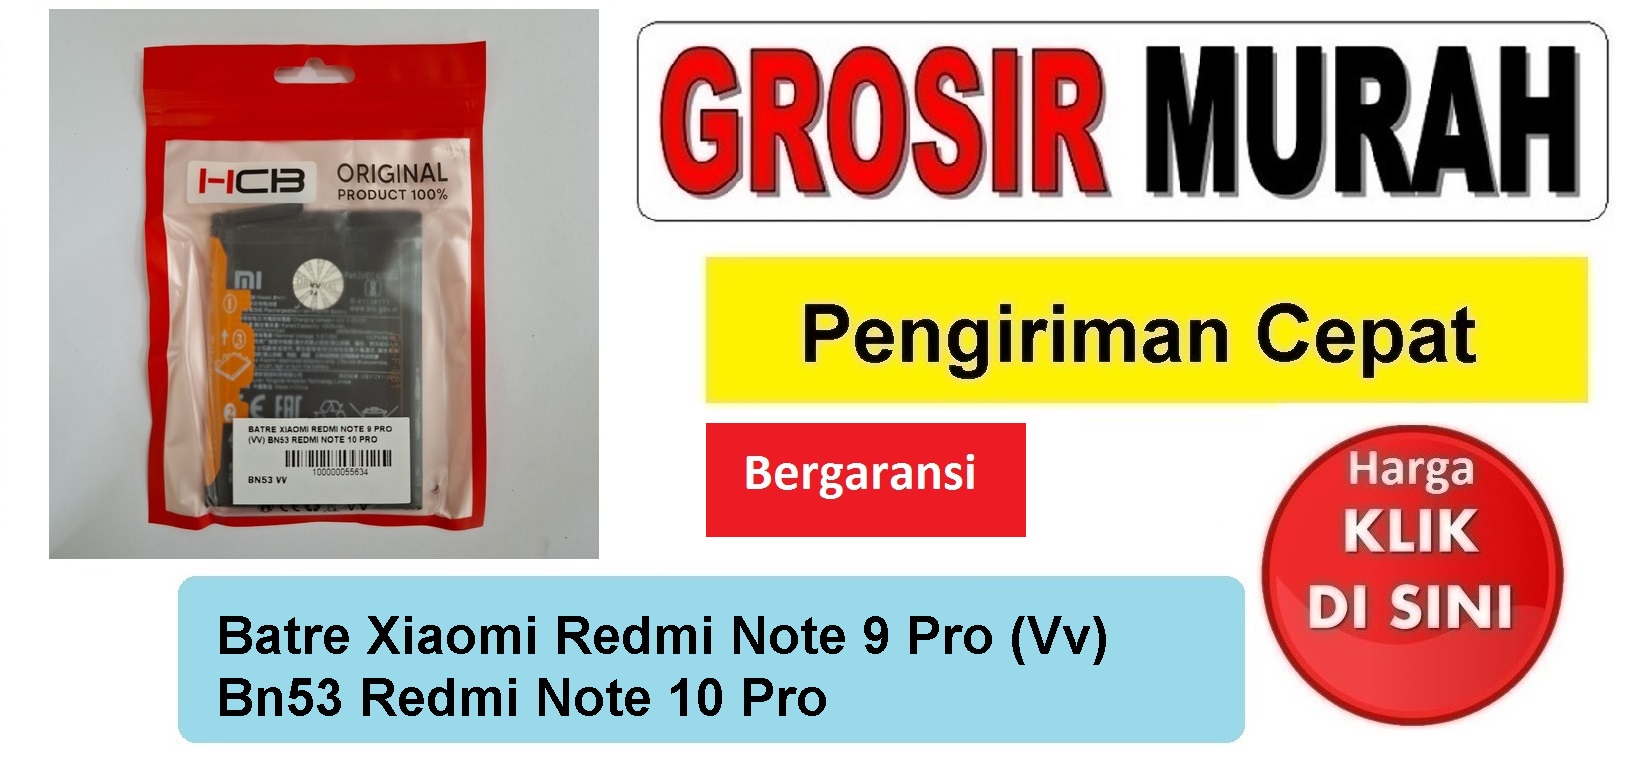 Batre Xiaomi Redmi Note 9 Pro (Vv) Bn53 Redmi Note 10 Pro Baterai Battery Bergaransi Batere